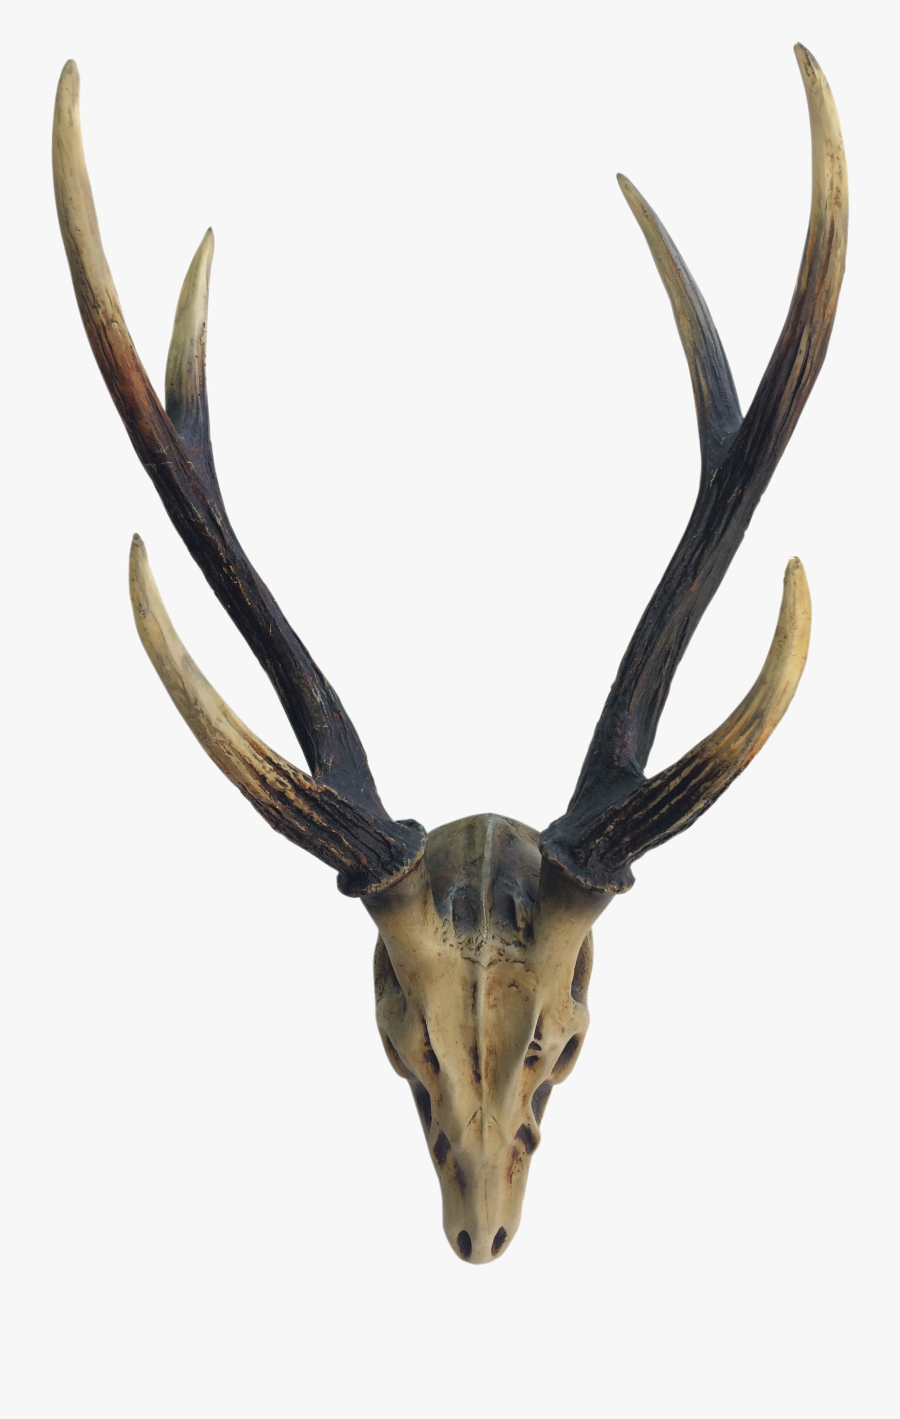 Elk Deer Horn Antler Image - Antler, Transparent Clipart